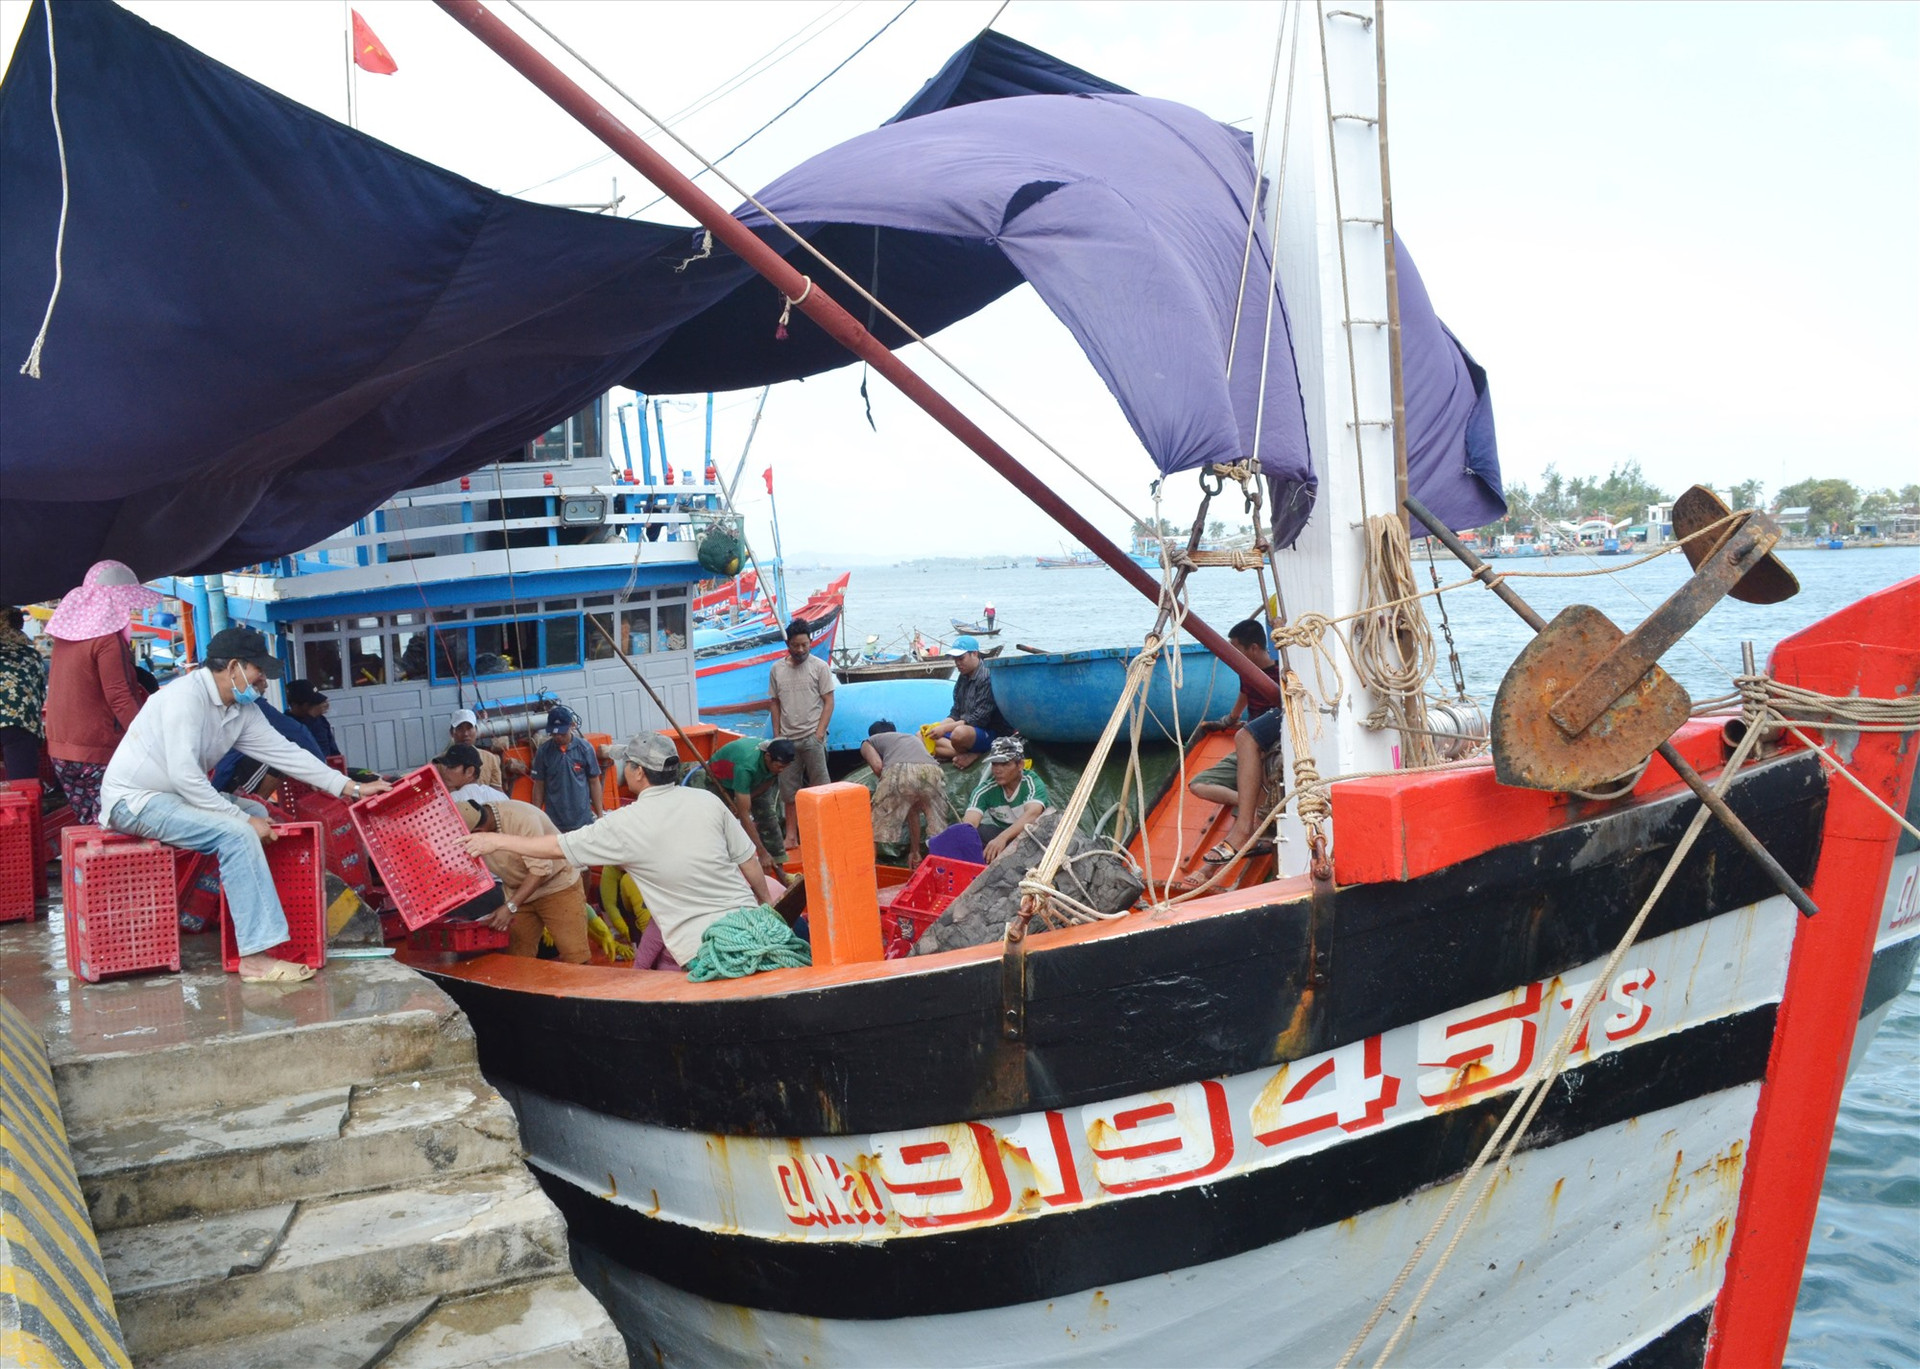 Với nhiều chuyển biến, nghề cá Quảng Nam đang dần chuyên nghiệp hóa để phát triển bền vững. Ảnh: VIỆT NGUYỄN